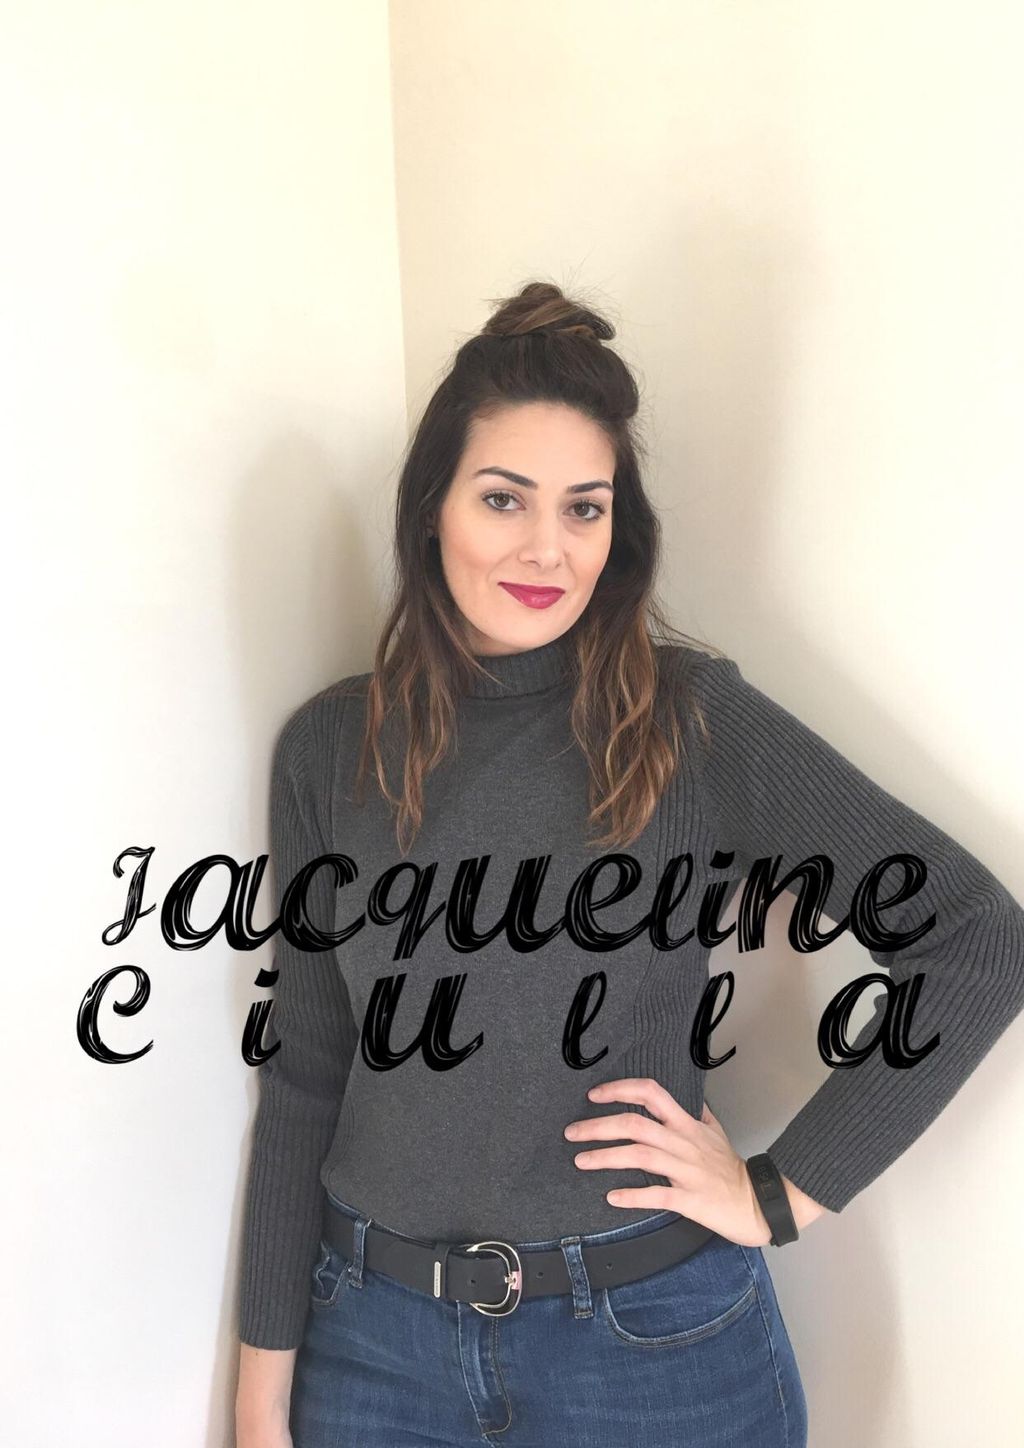 Jacqueline's Hair Studio Salon